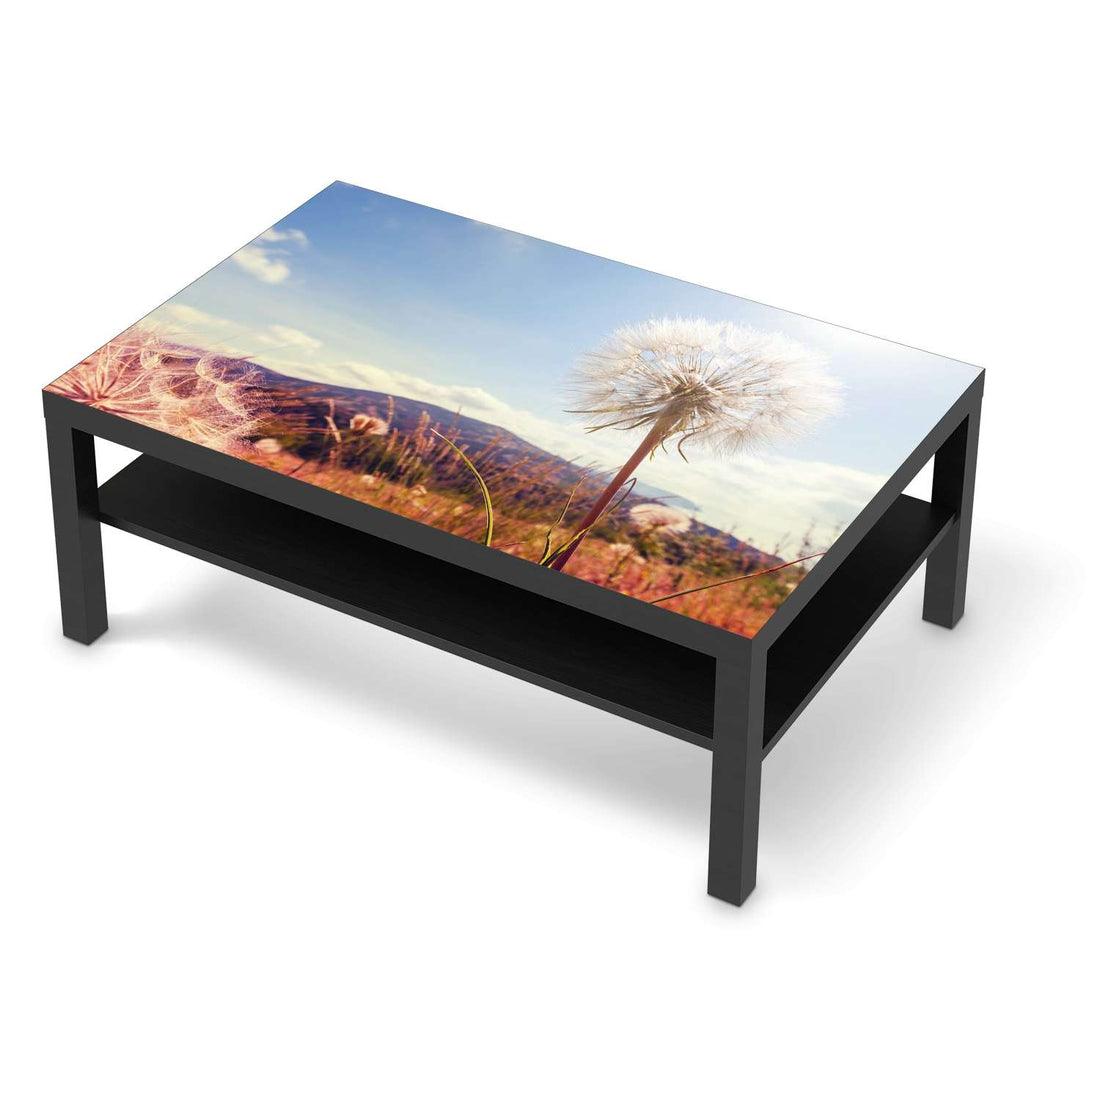 Klebefolie Dandelion - IKEA Lack Tisch 118x78 cm - schwarz